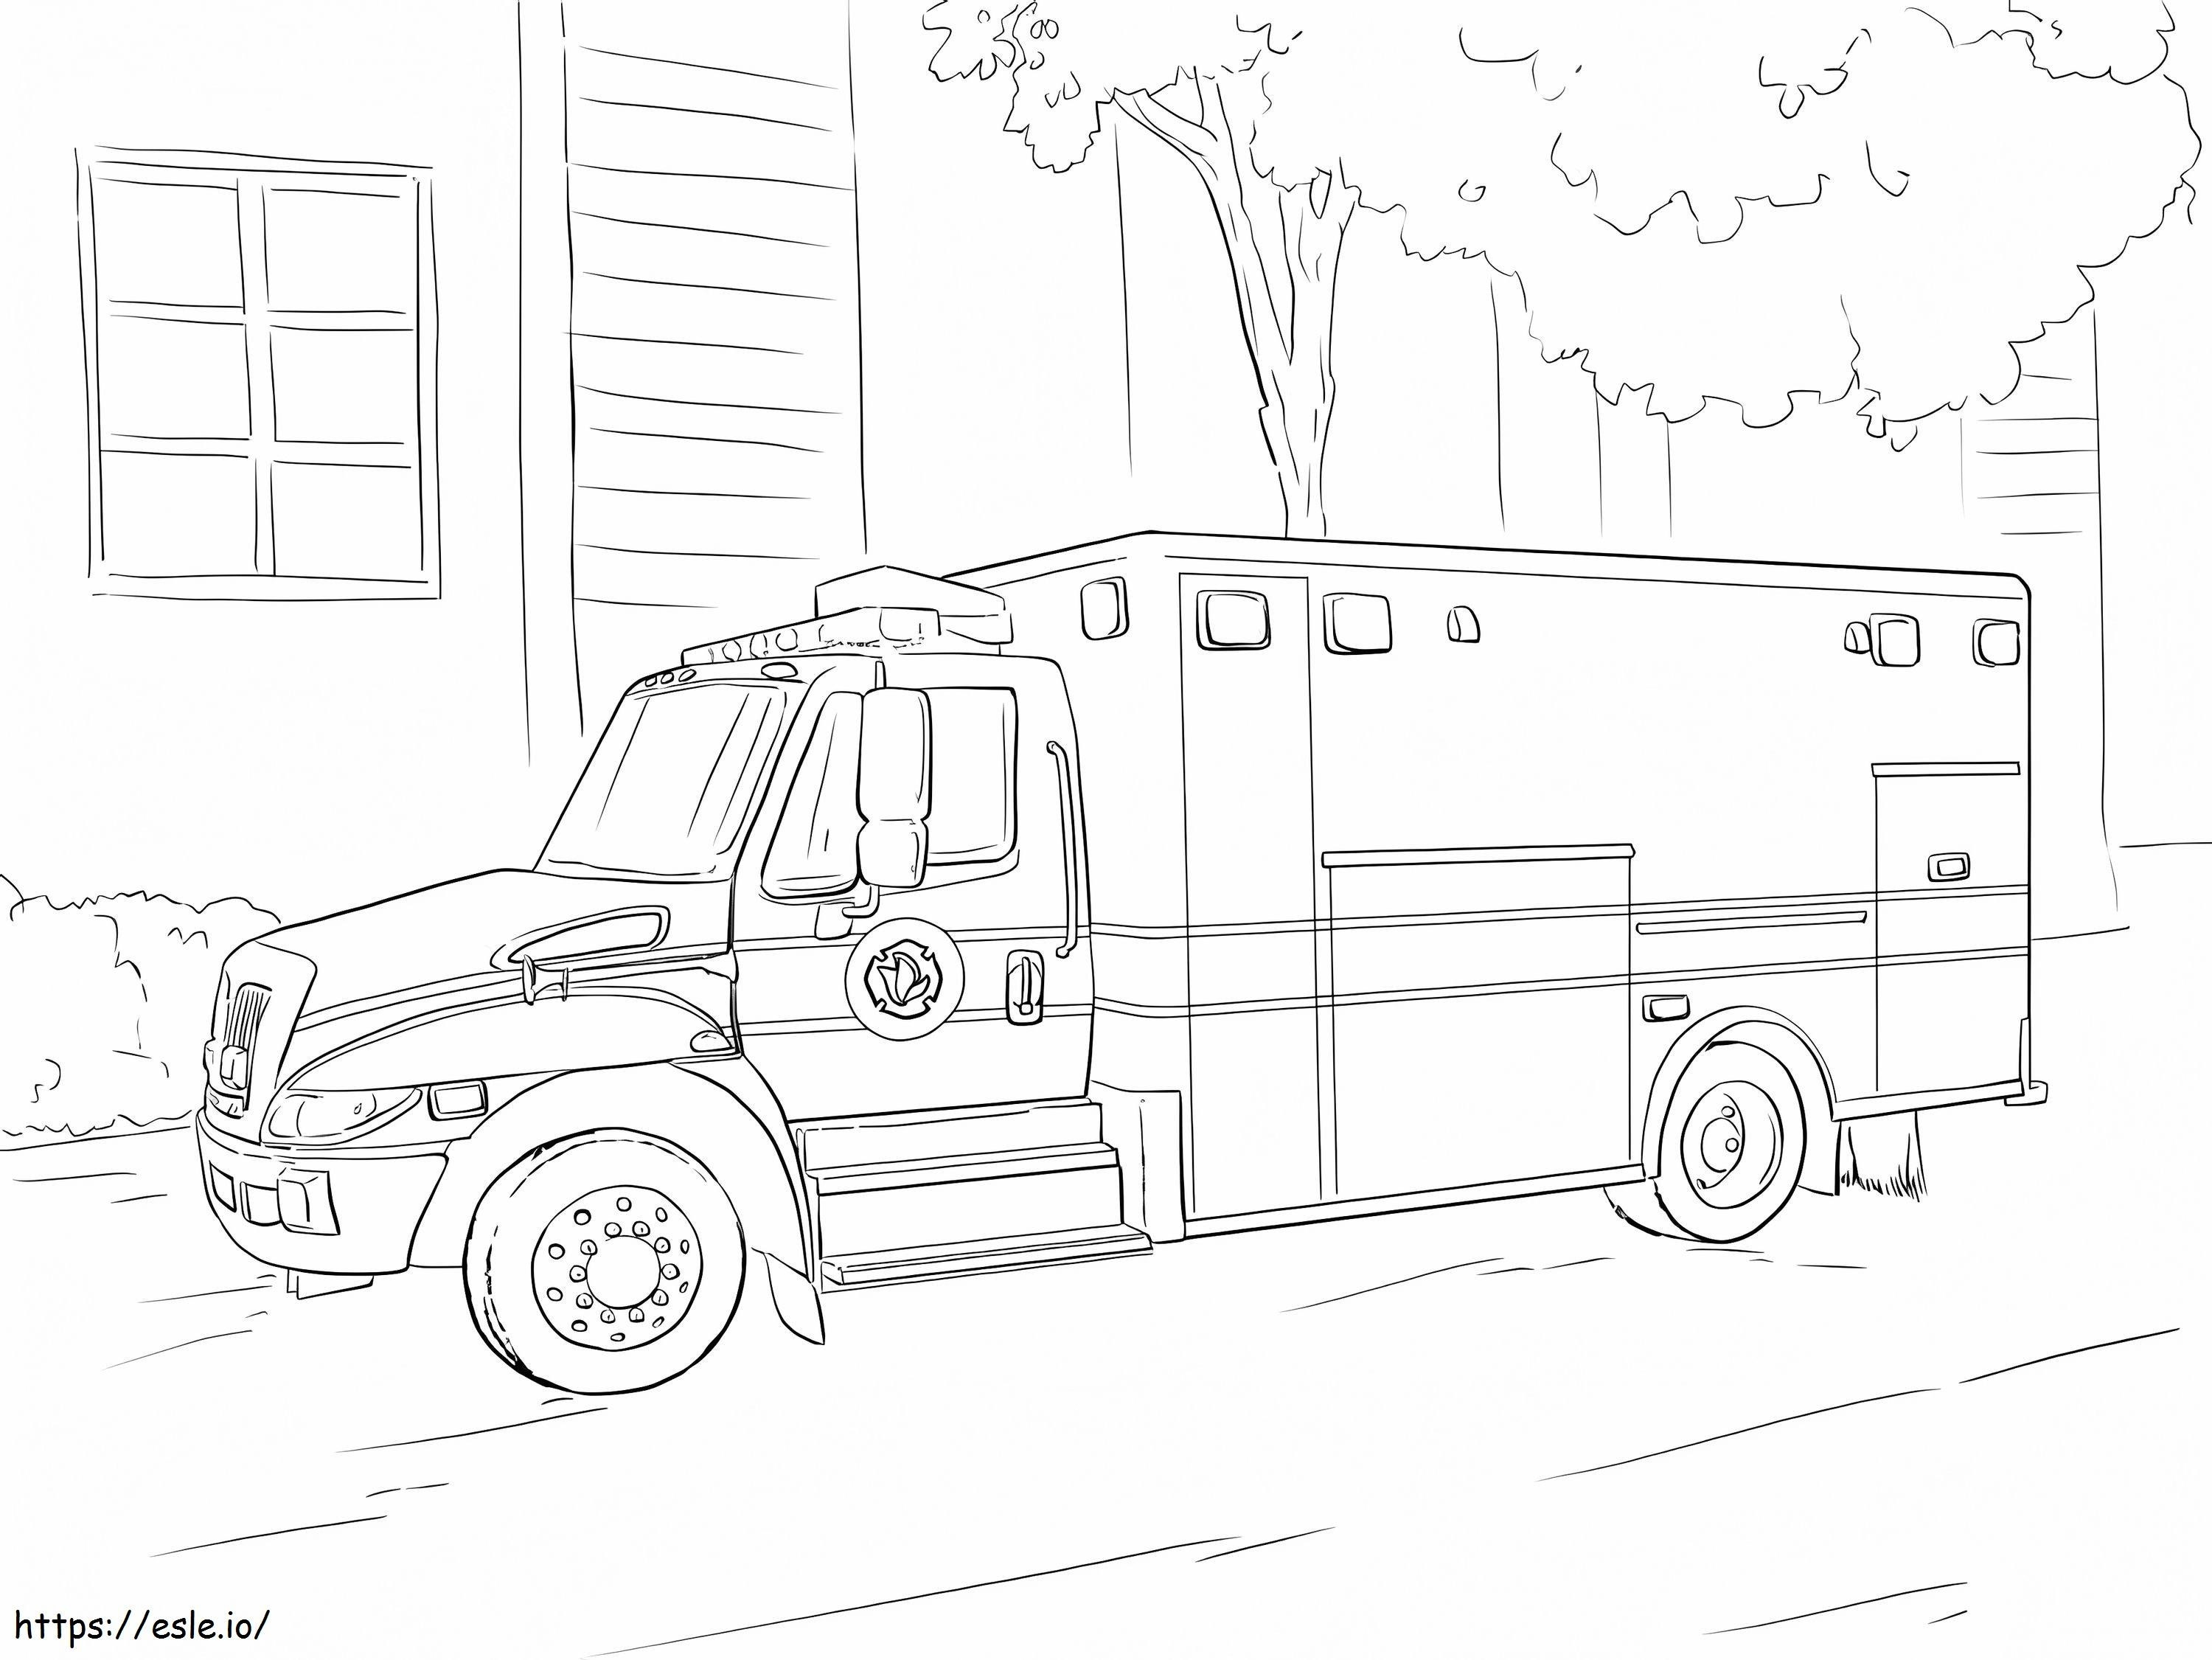 Ambulance 12 coloring page